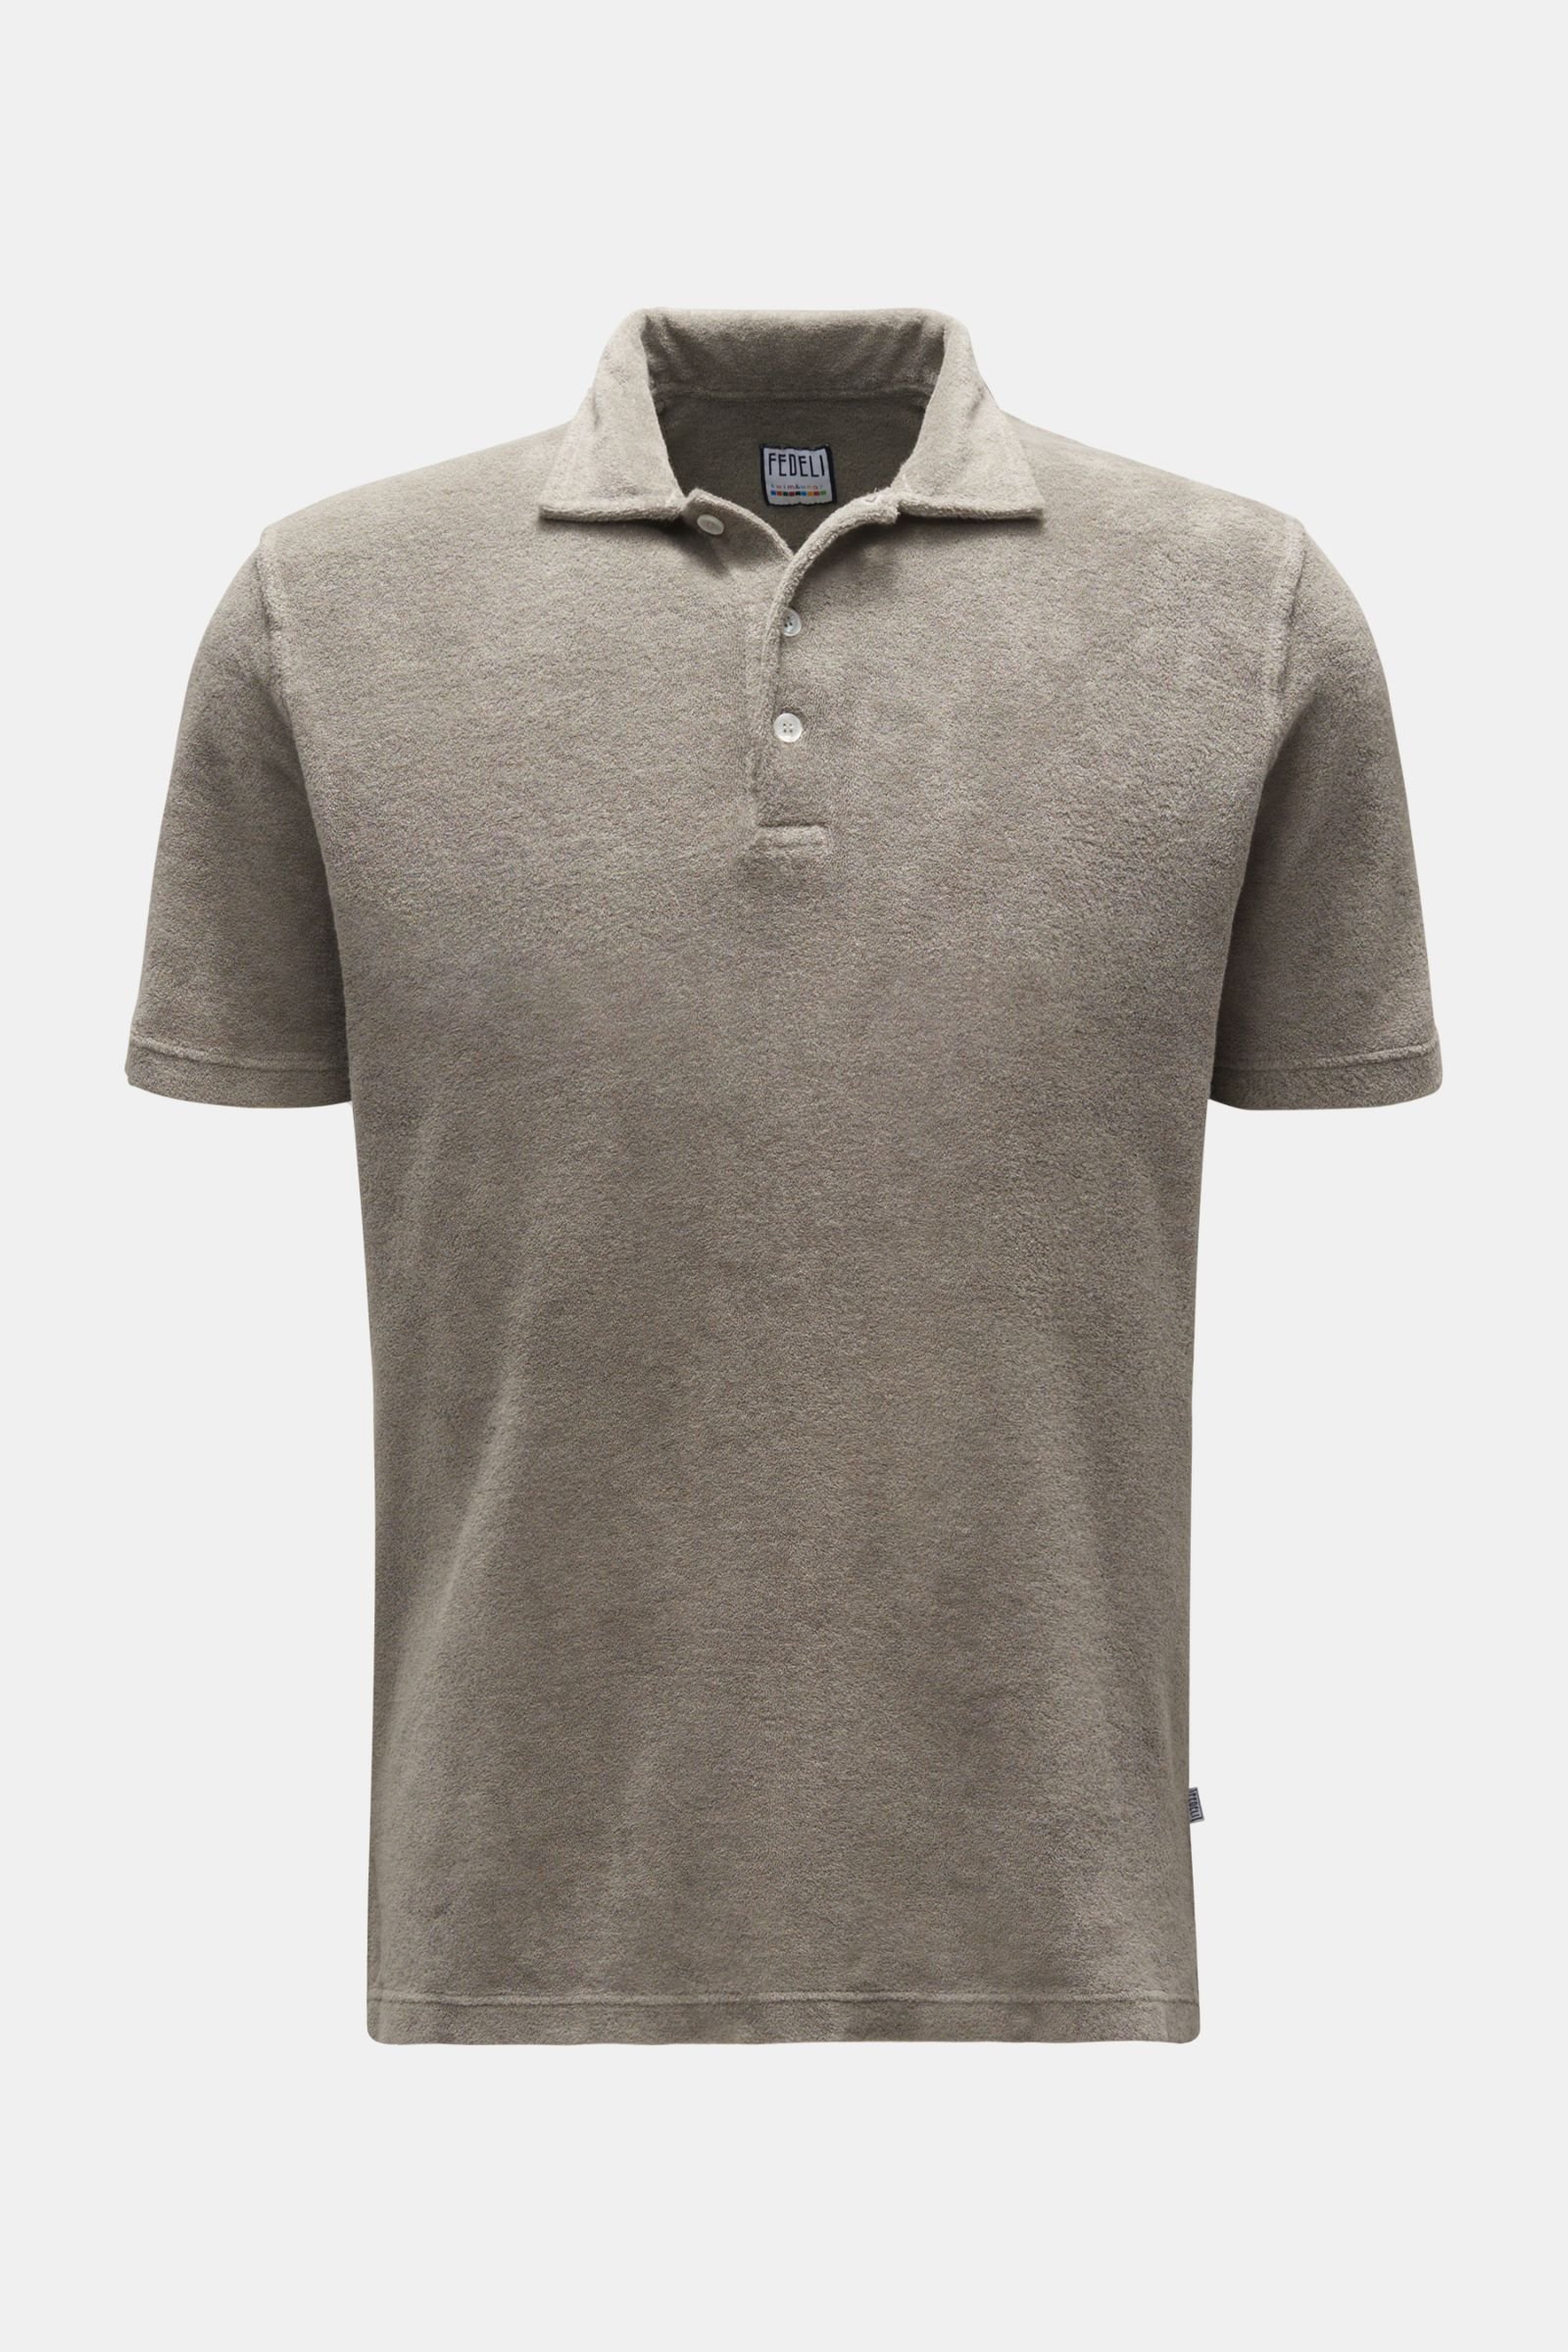 Terry polo shirt 'Terry Mondial' grey